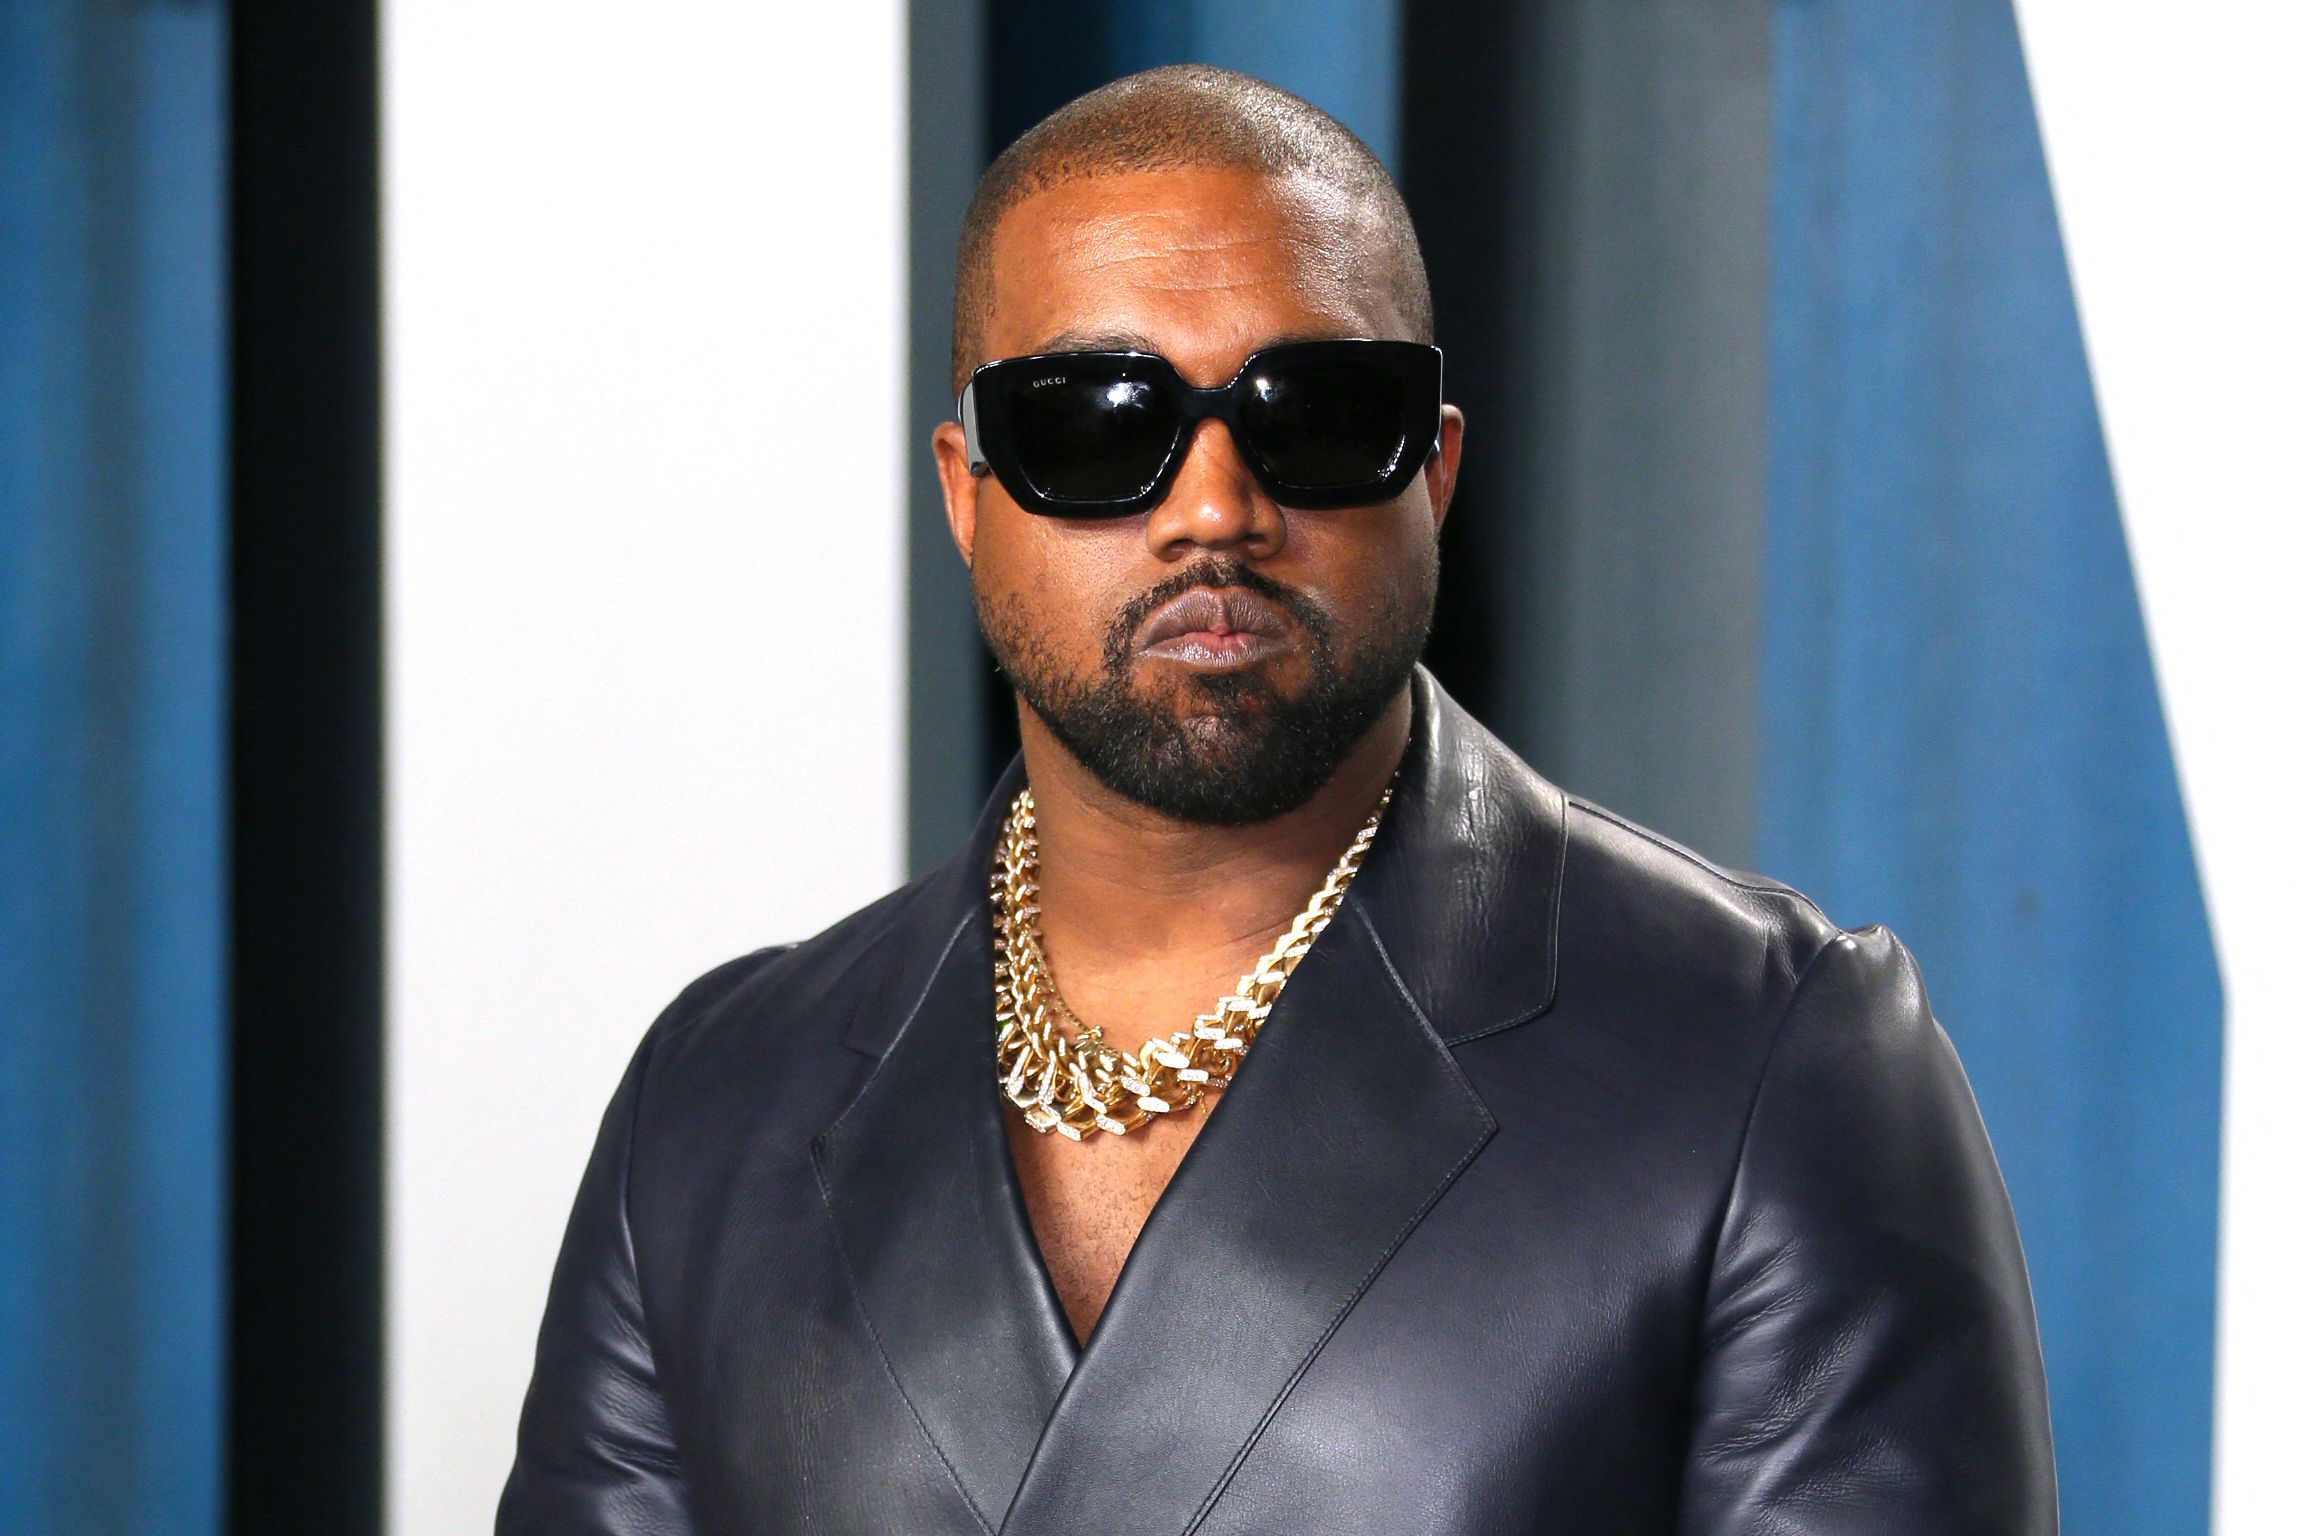 Kanye West ha sido señalado en varias ocasiones de agredir a personas que se acercan a él por un autógrafo o una fotografía. (Foto Prensa Libre: Jean-Baptiste Lacroix / AFP).